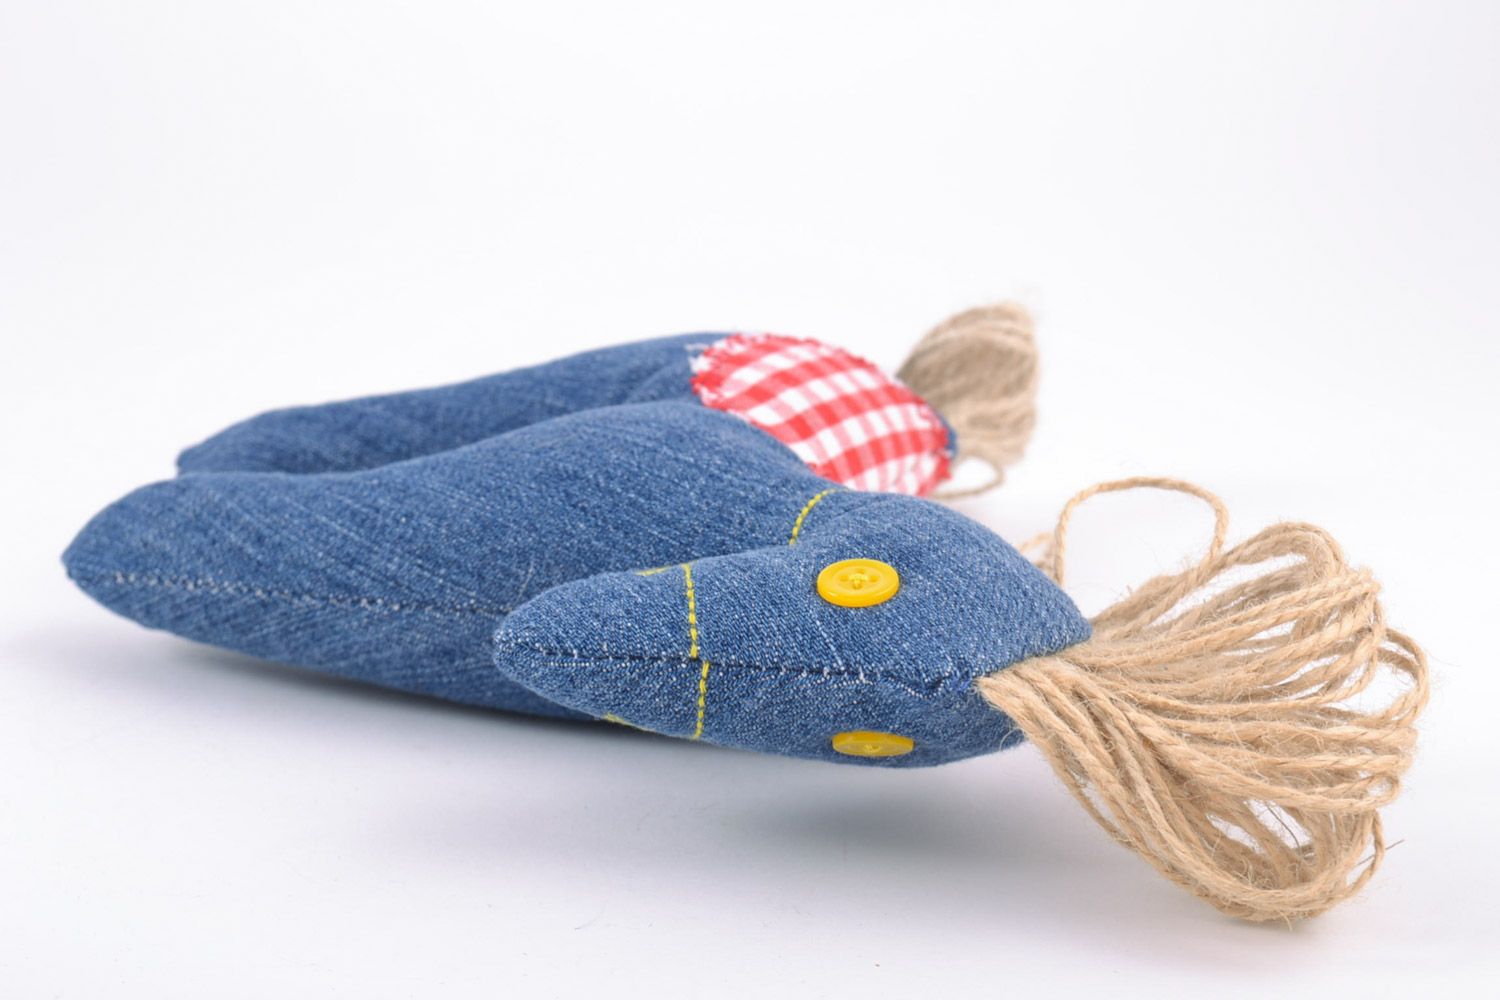 Мягкая игрушка из ткани ручной работы синий конь авторская детская красивая фото 4